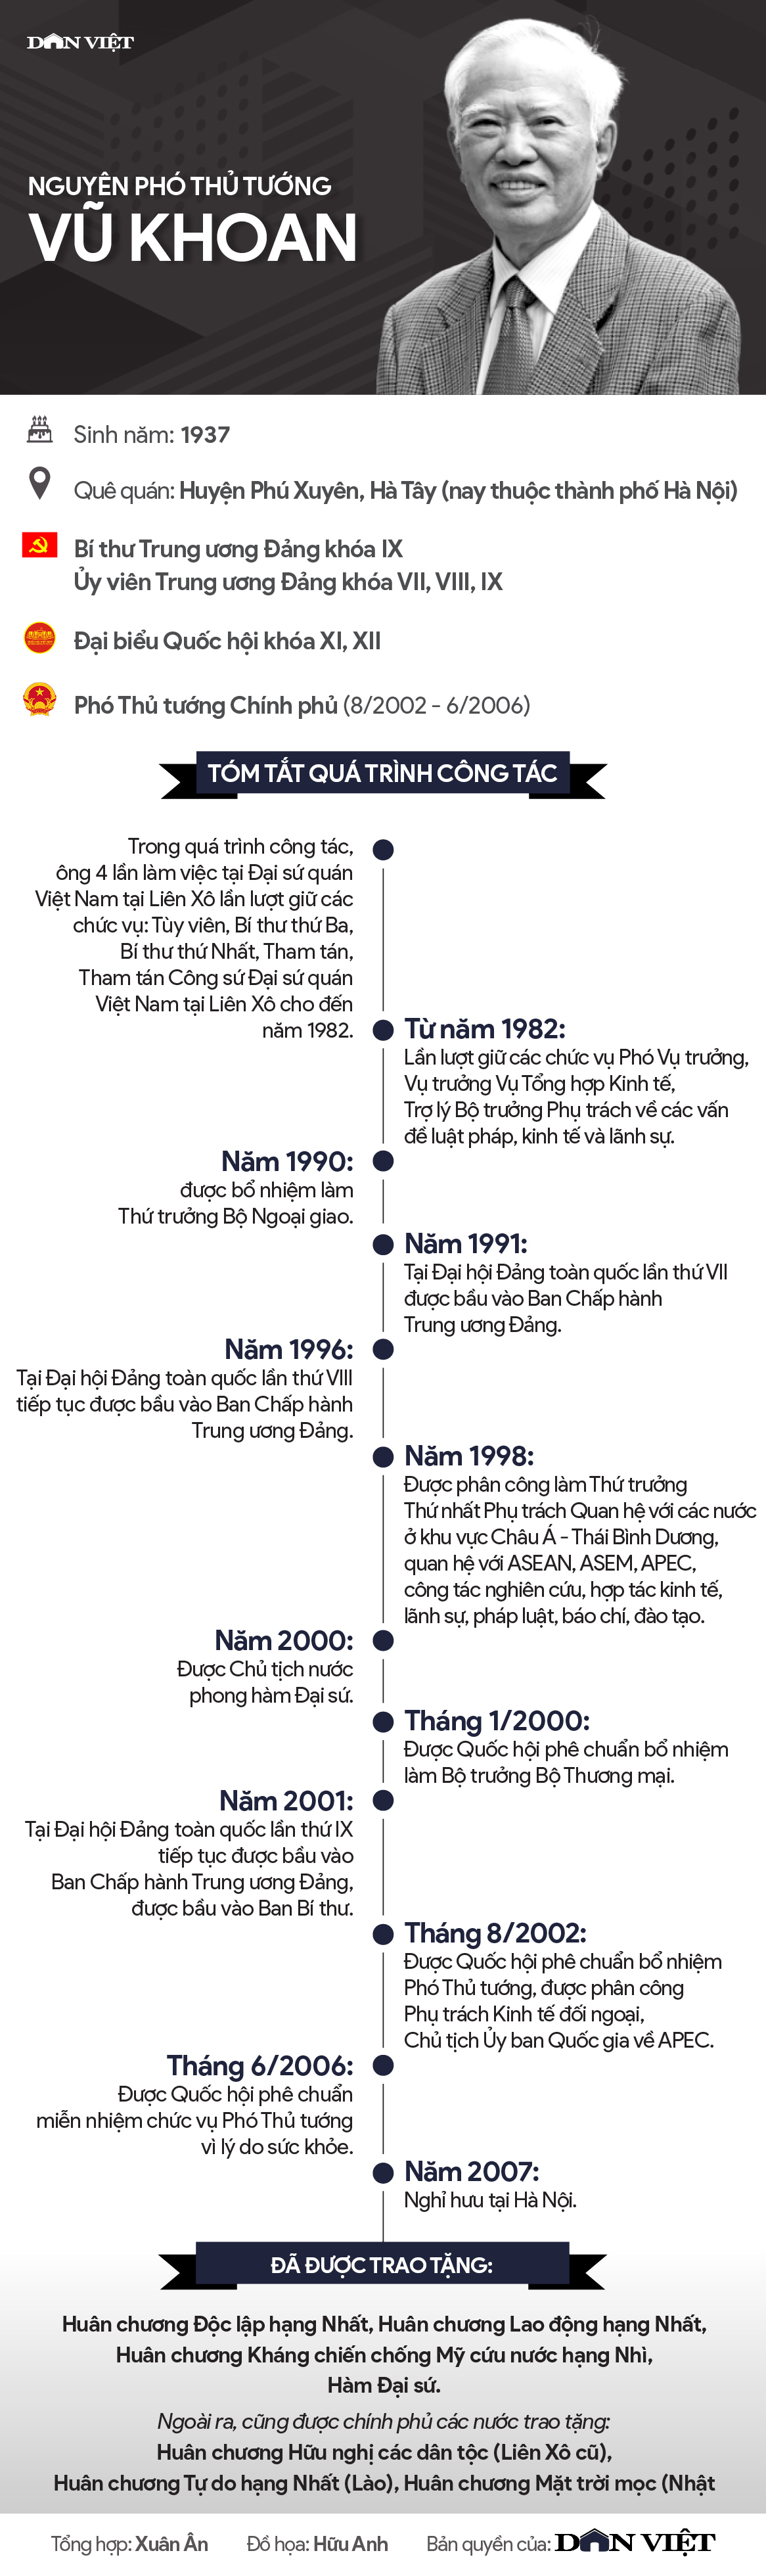 Infographic chân dung và sự nghiệp của nguyên Phó Thủ tướng Vũ Khoan - Ảnh 1.